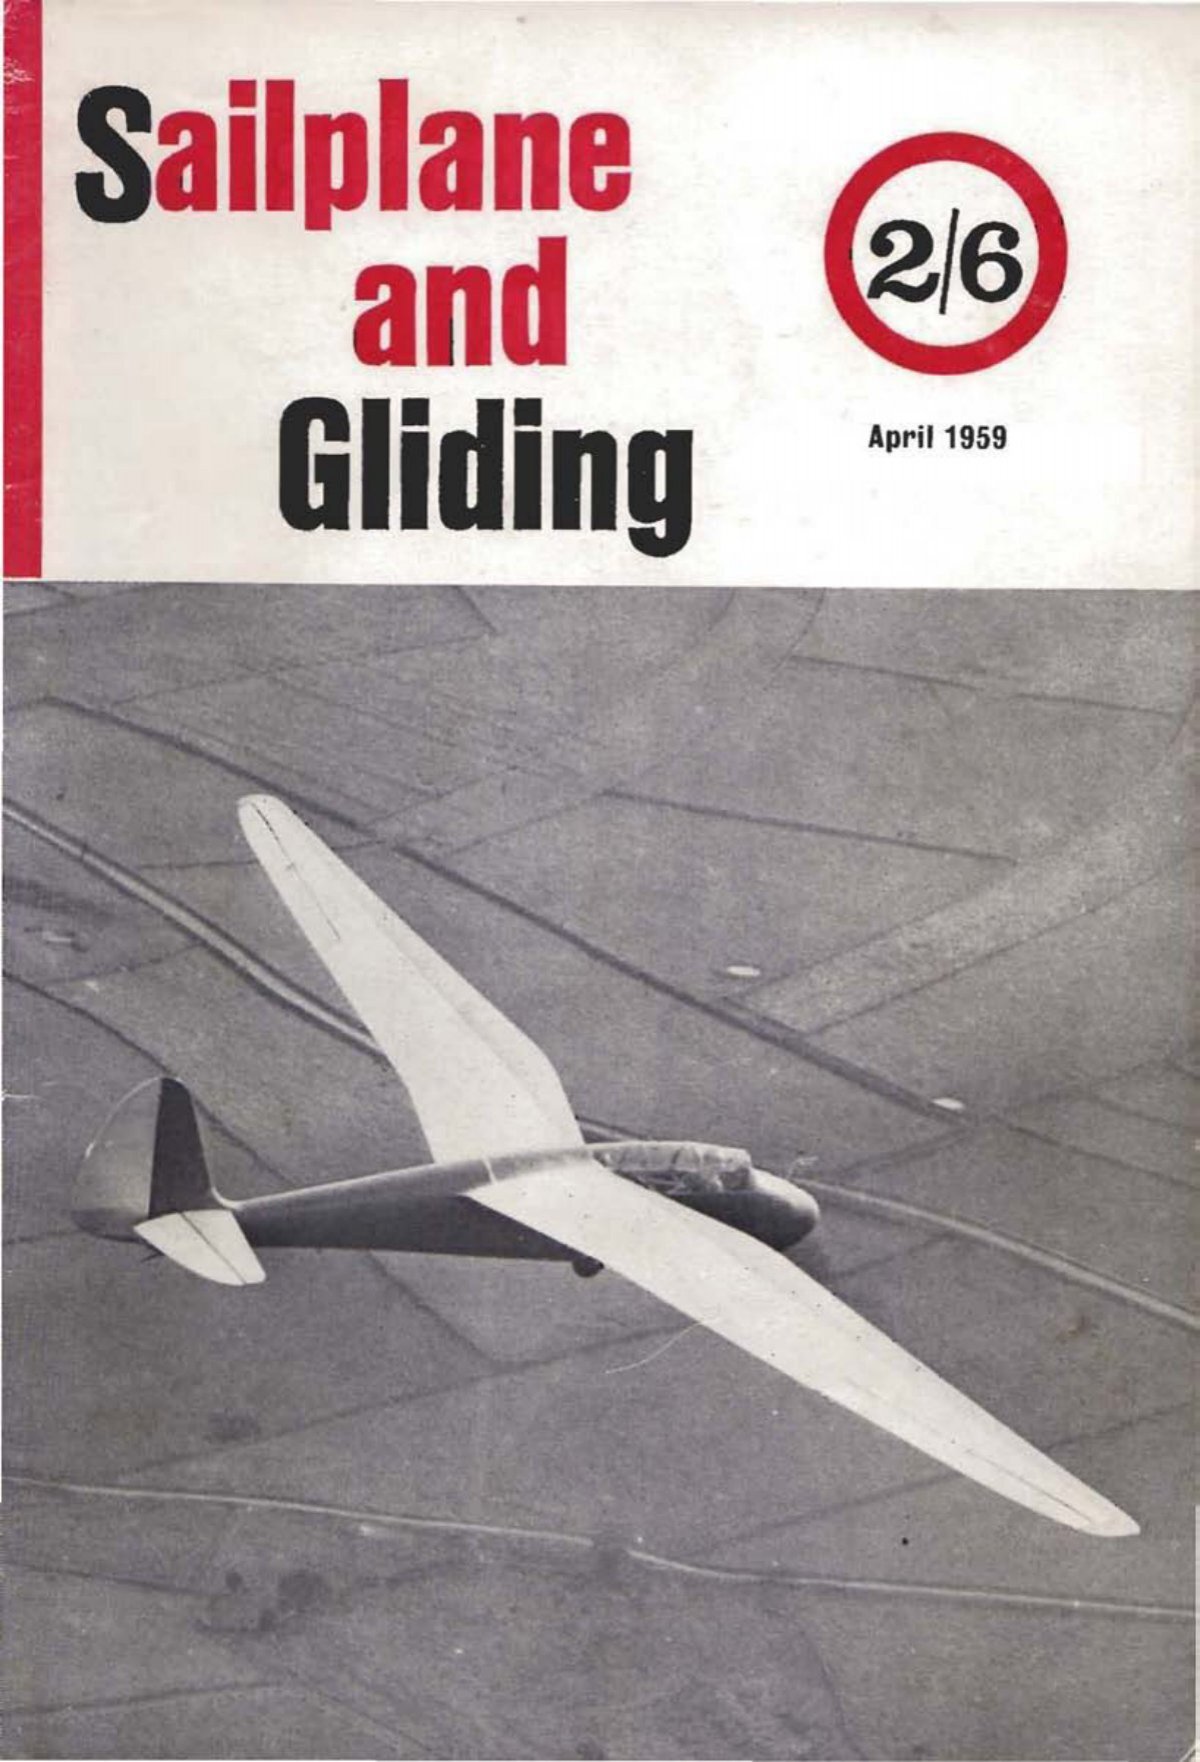 Volume 10 No 2 Apr 1959.pdf - Lakes Gliding Club